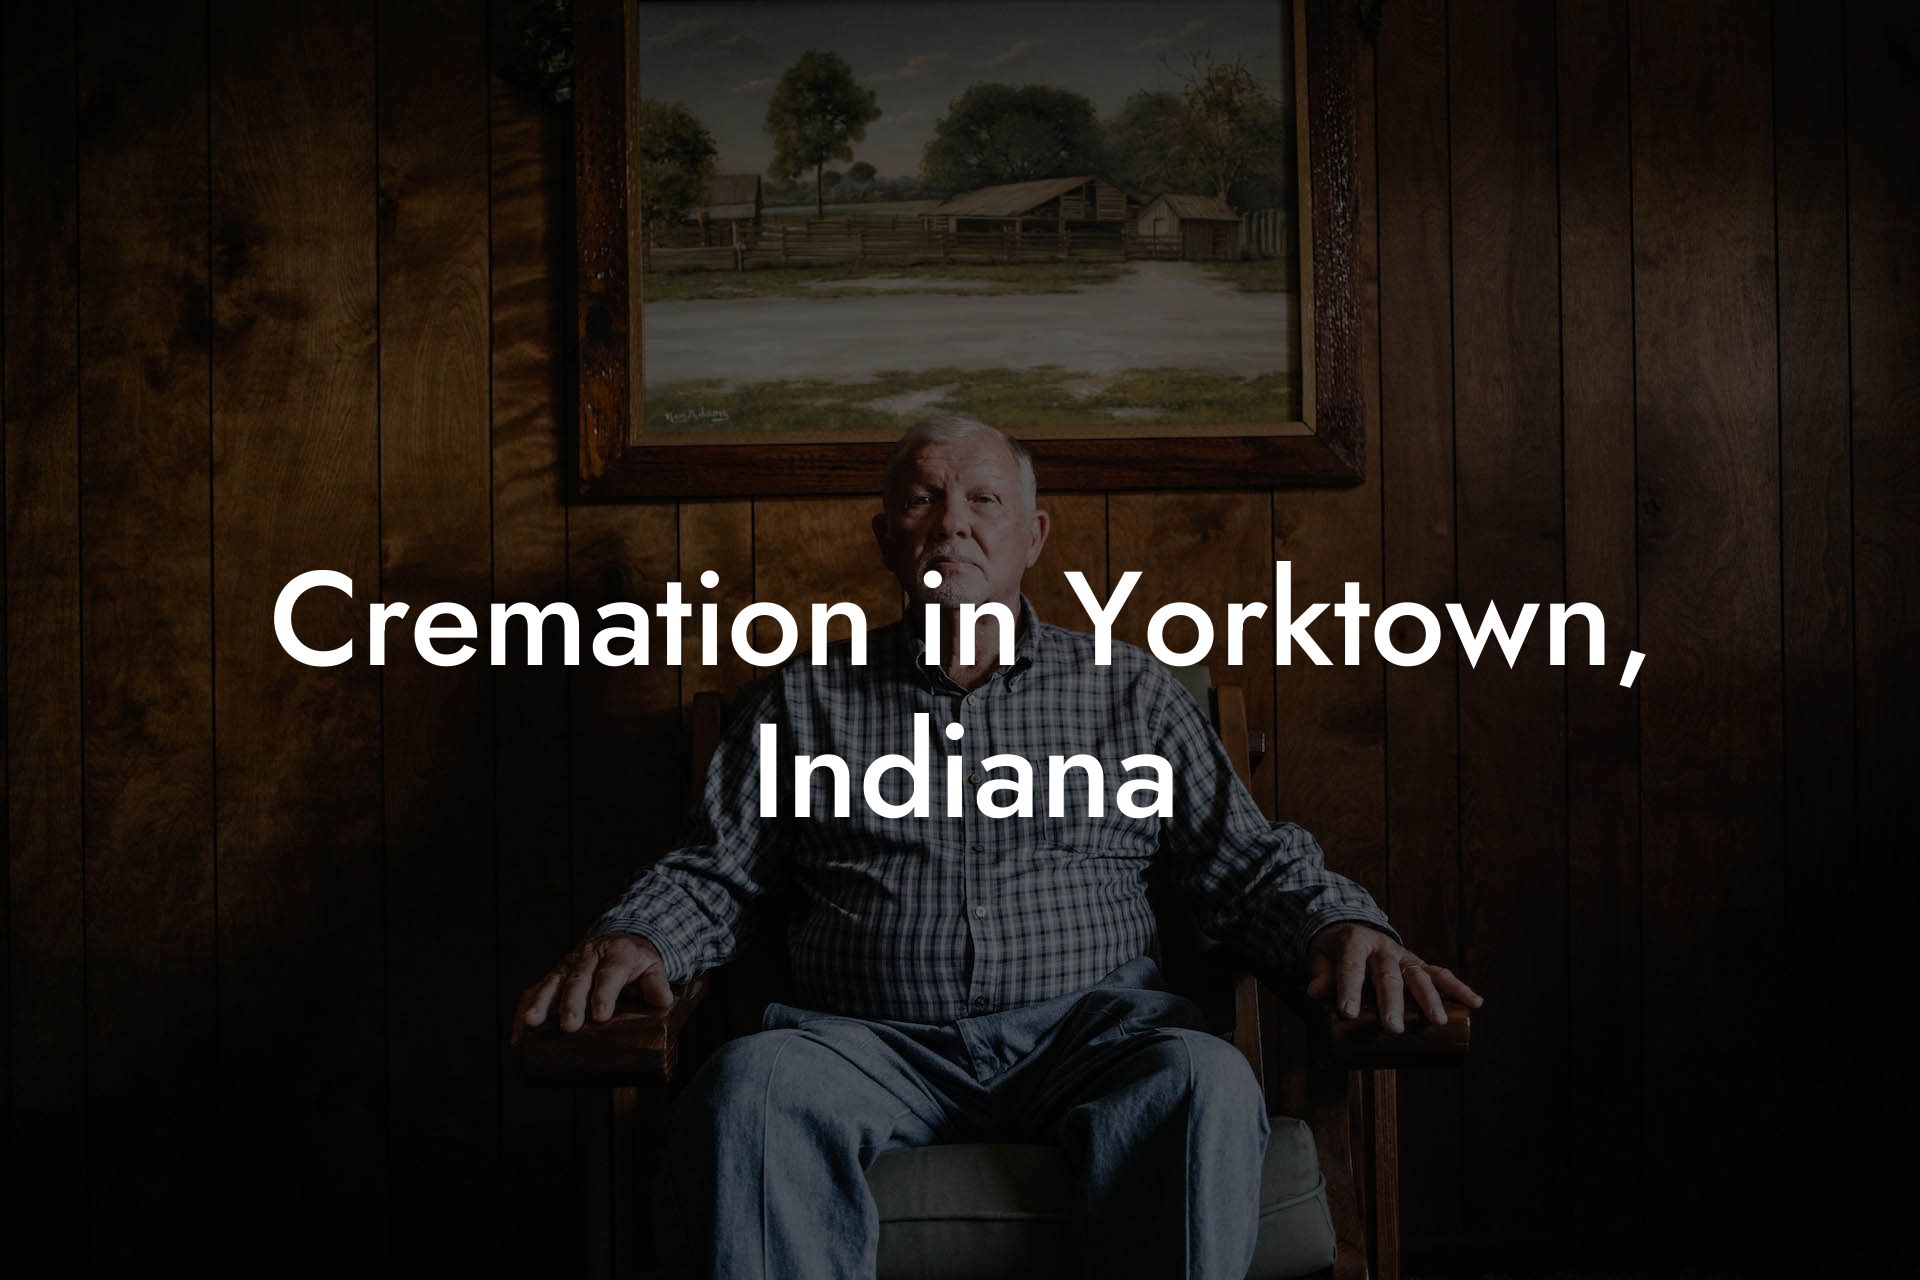 Cremation in Yorktown, Indiana